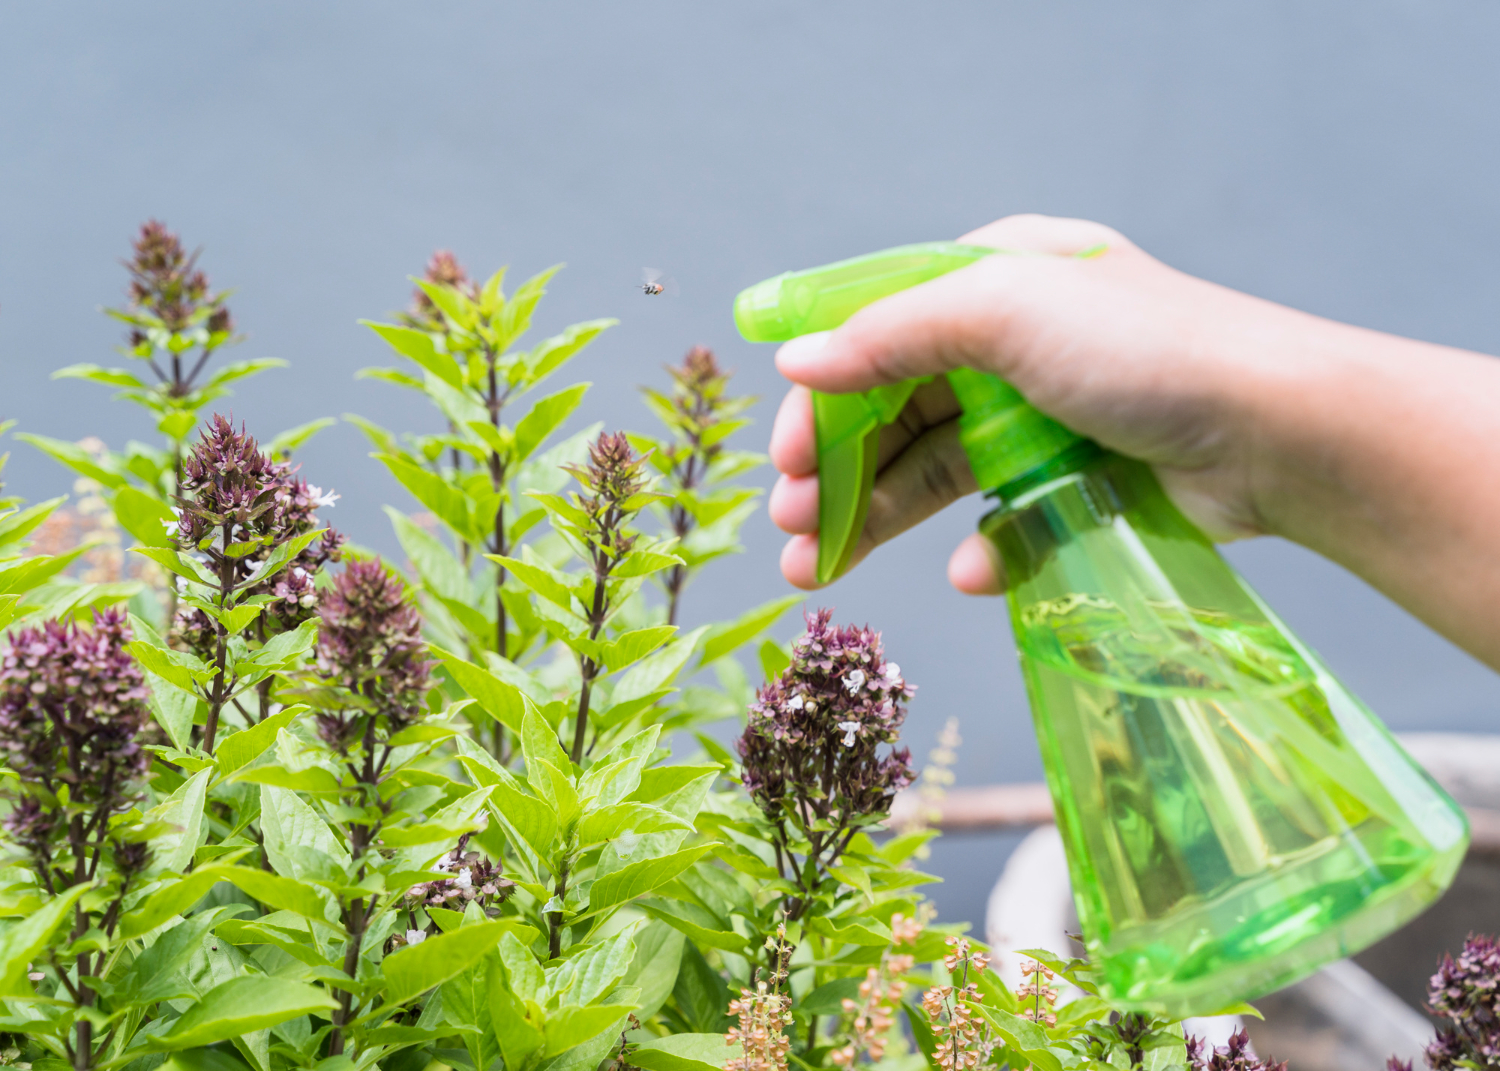 Descubra como fazer um herbicida caseiro eficaz com bicarbonato de sódio e outros ingredientes naturais!